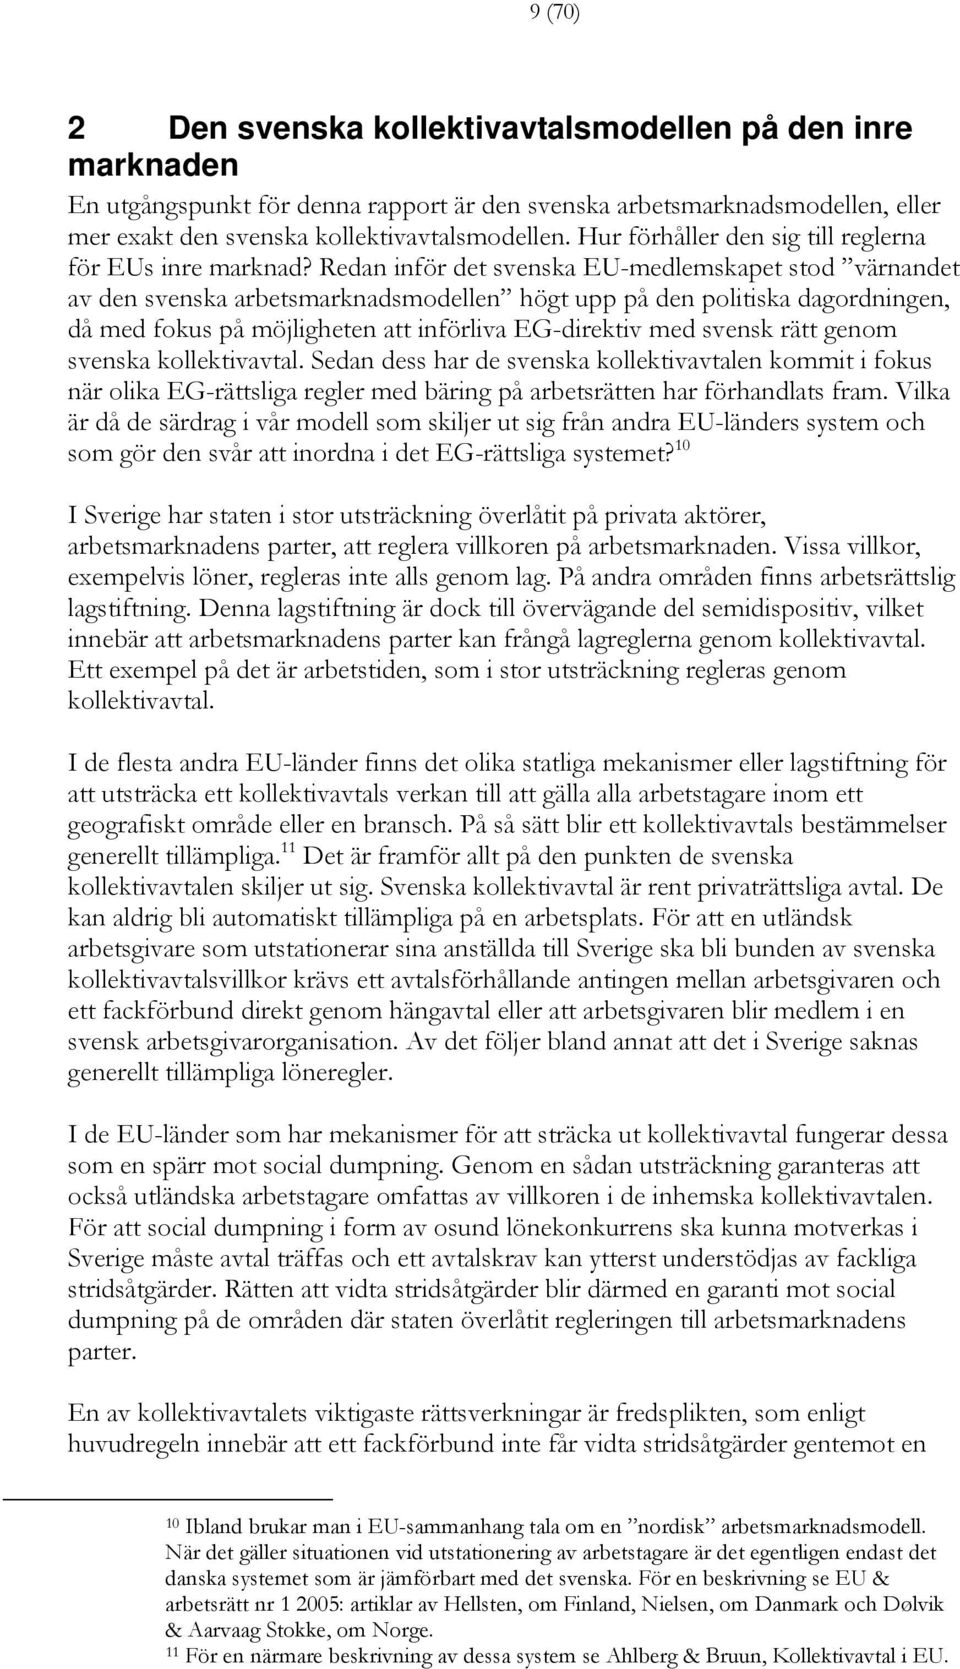 Redan inför det svenska EU-medlemskapet stod värnandet av den svenska arbetsmarknadsmodellen högt upp på den politiska dagordningen, då med fokus på möjligheten att införliva EG-direktiv med svensk